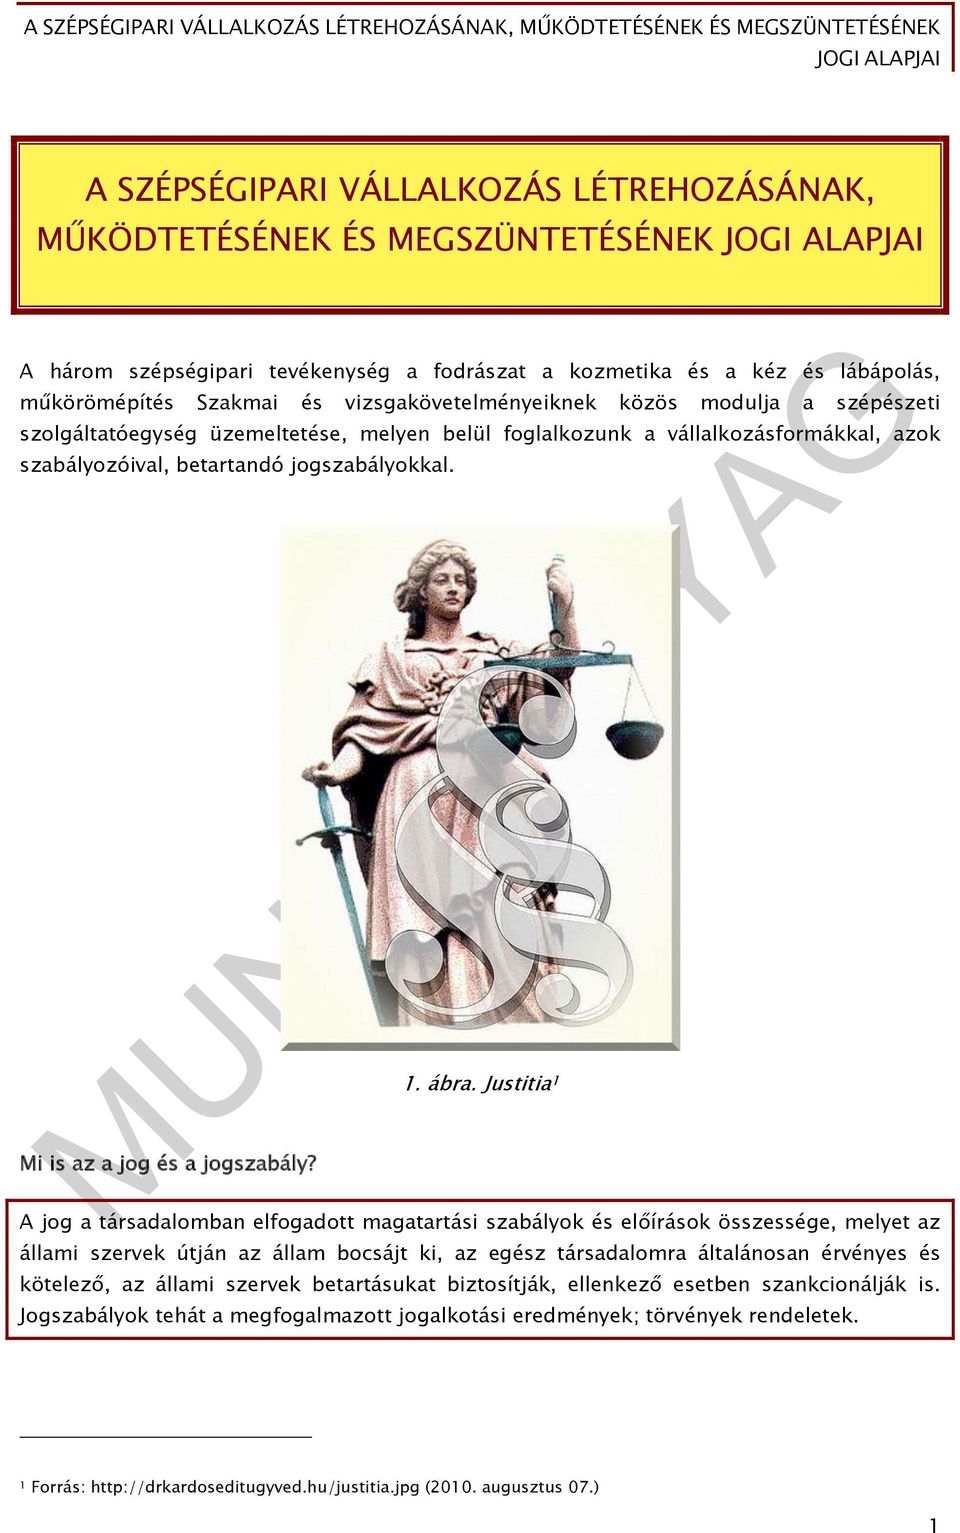 Justitia 1 Mi is az a jog és a jogszabály?